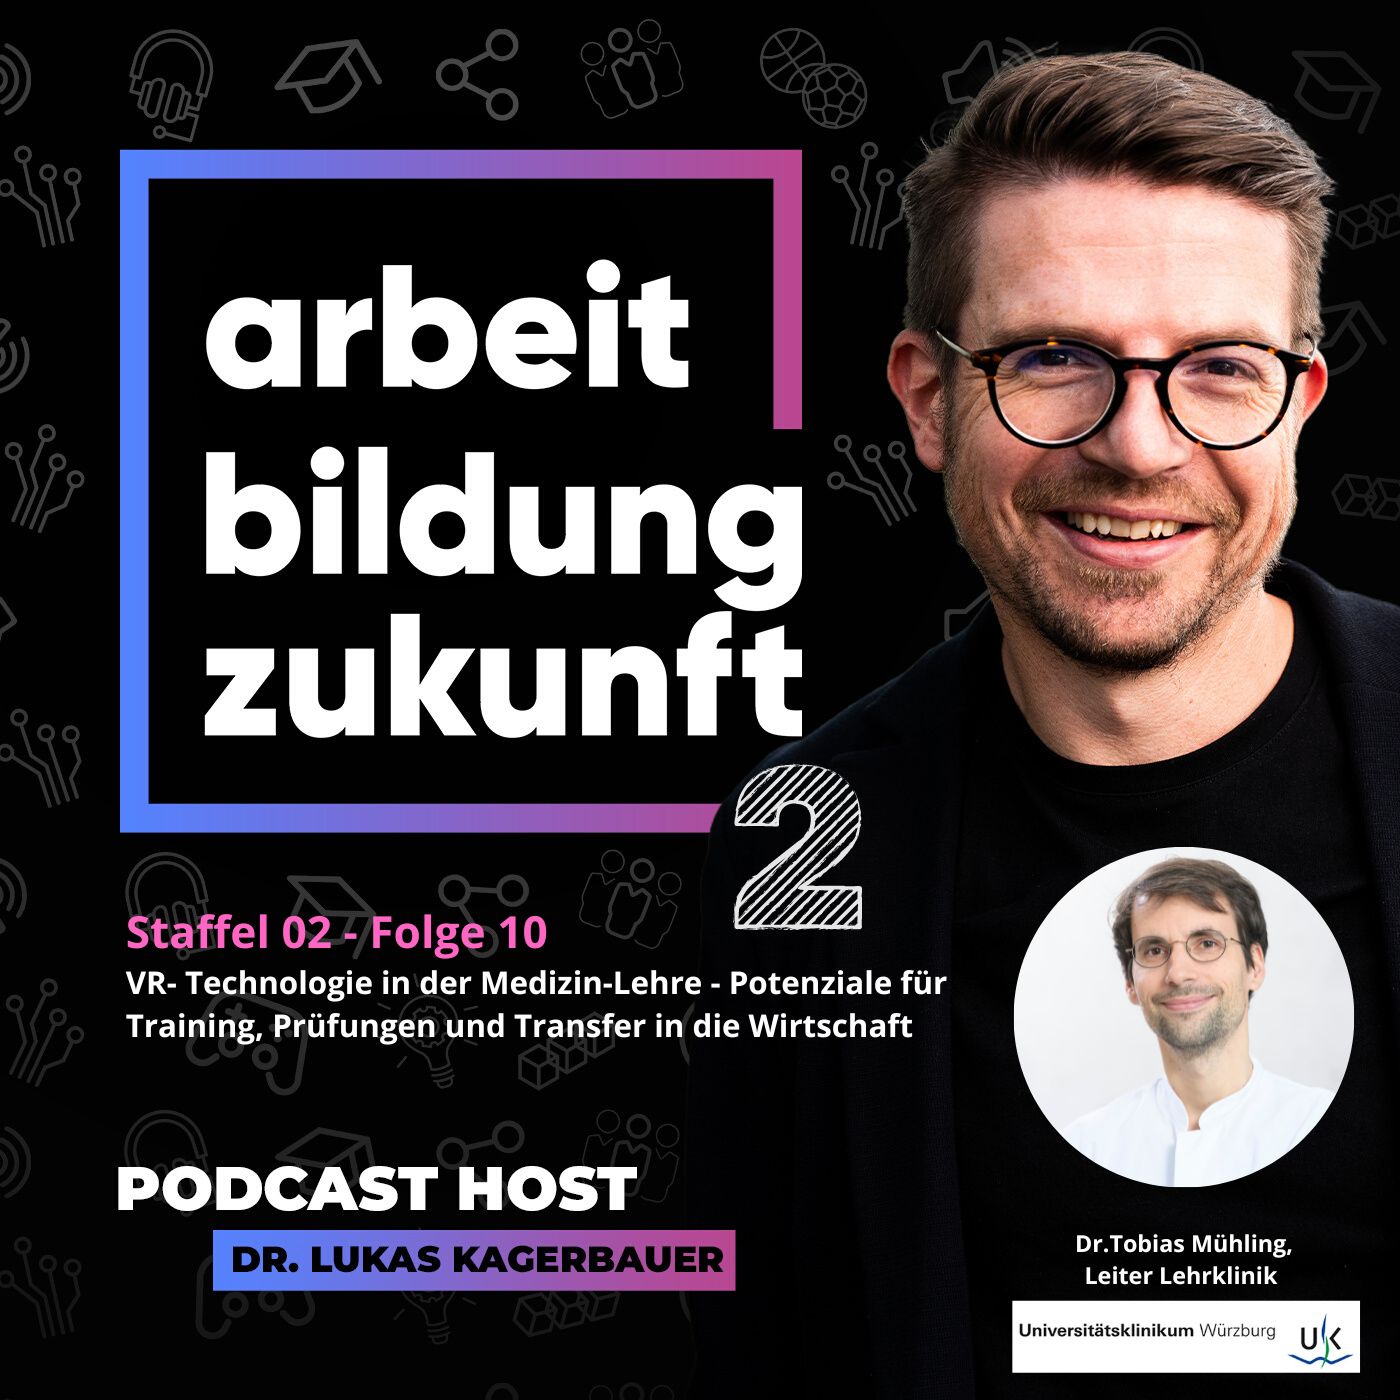 #ABZ 02-10 Virtuelle Realität in der Medizin-Lehre, Gast: Dr. Tobias Mühling, Leiter der Lehrklinik am Uniklinikum Würzburg 👩‍⚕️🌐